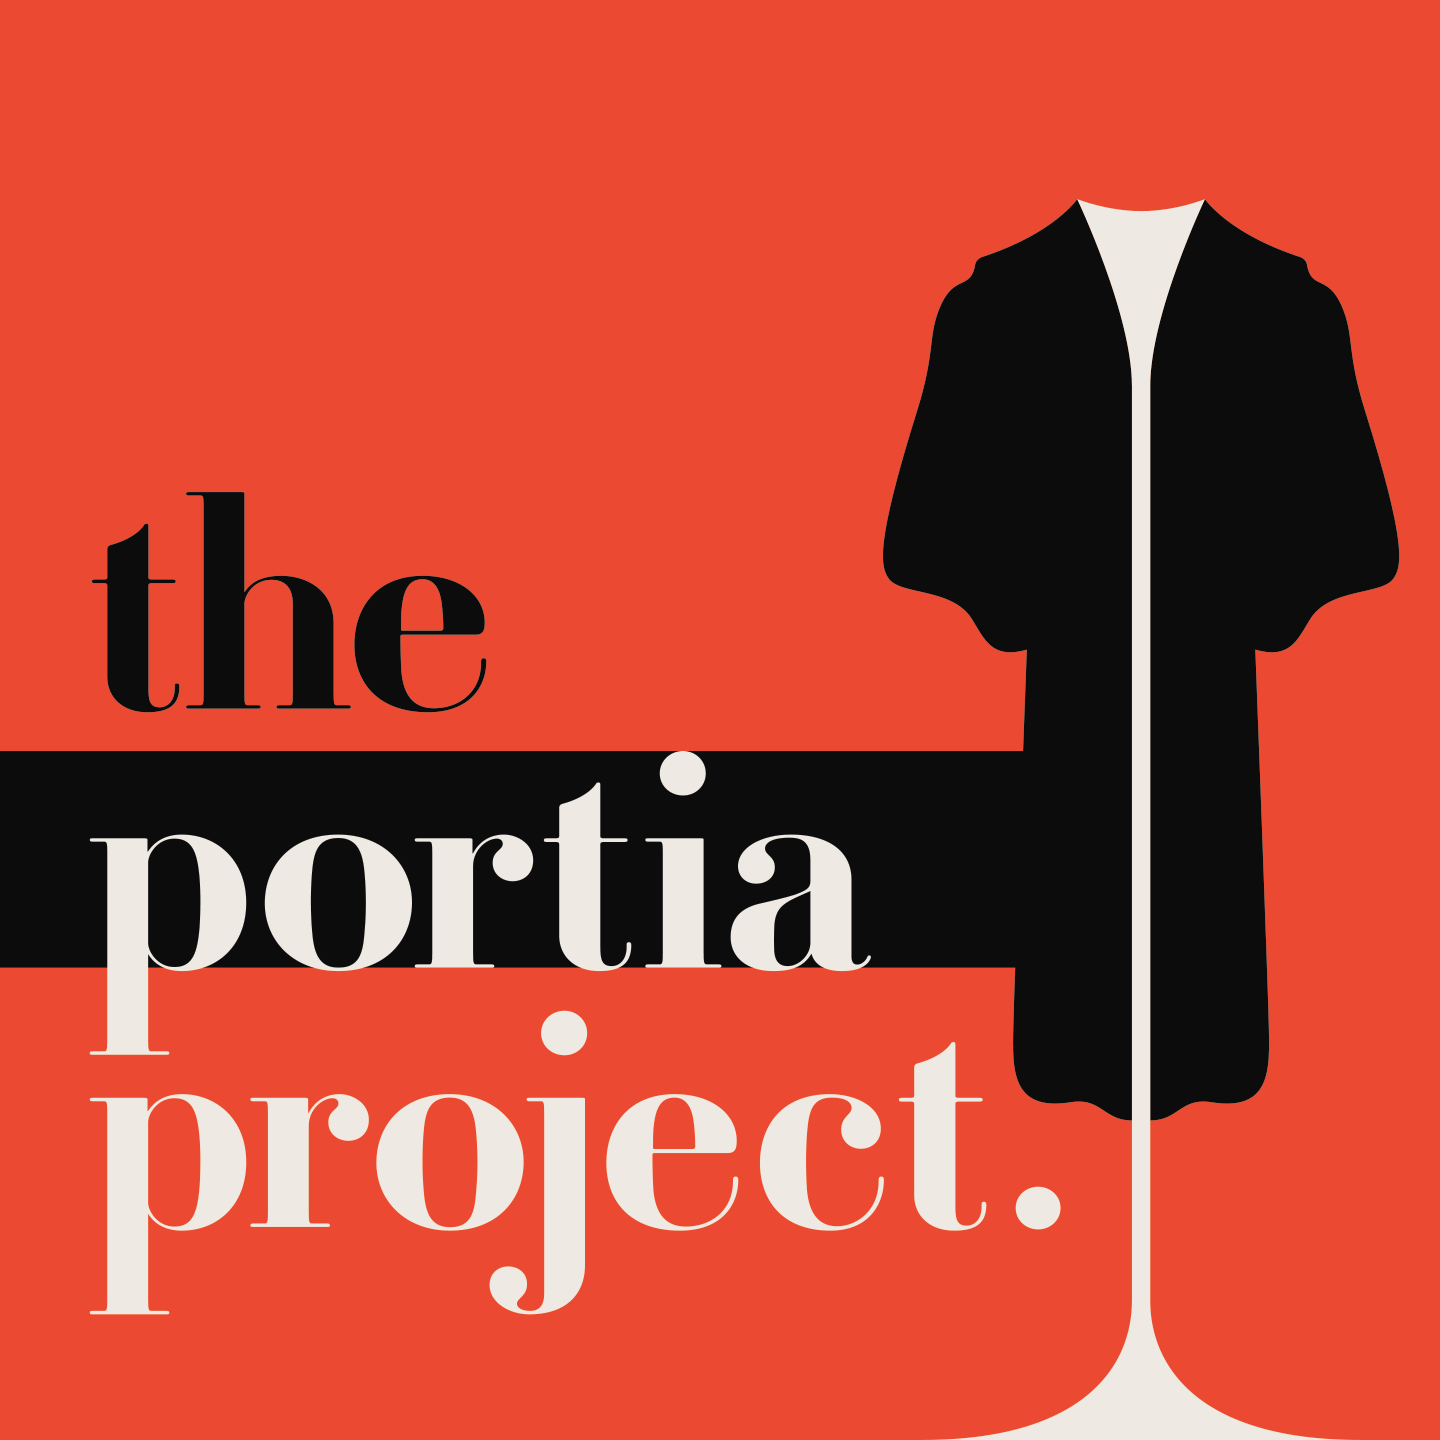 Portia Project